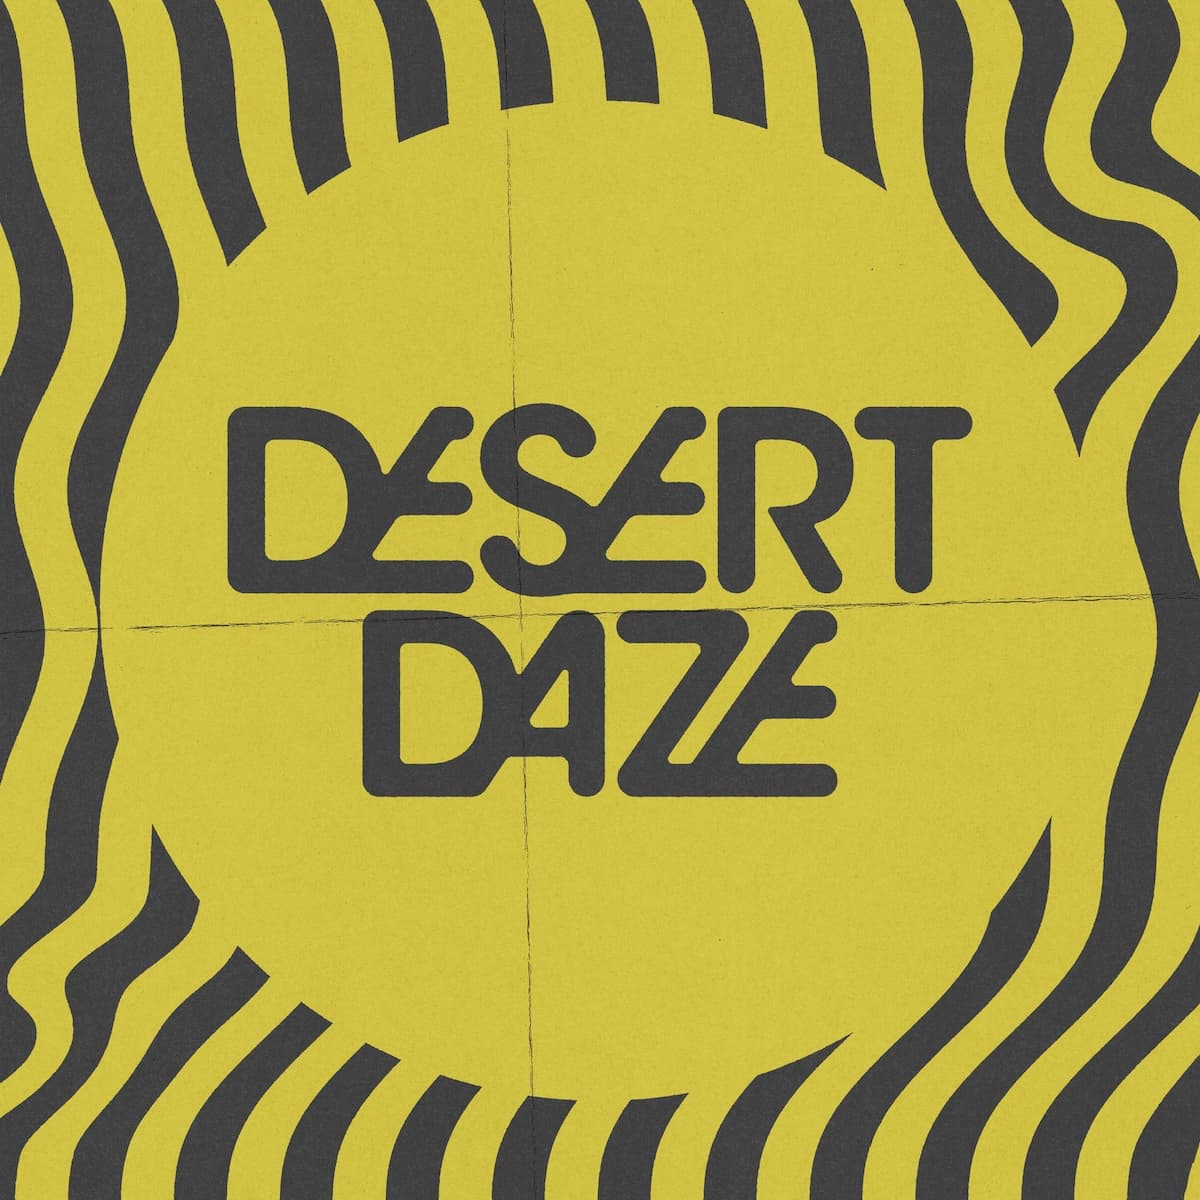 Desert Daze